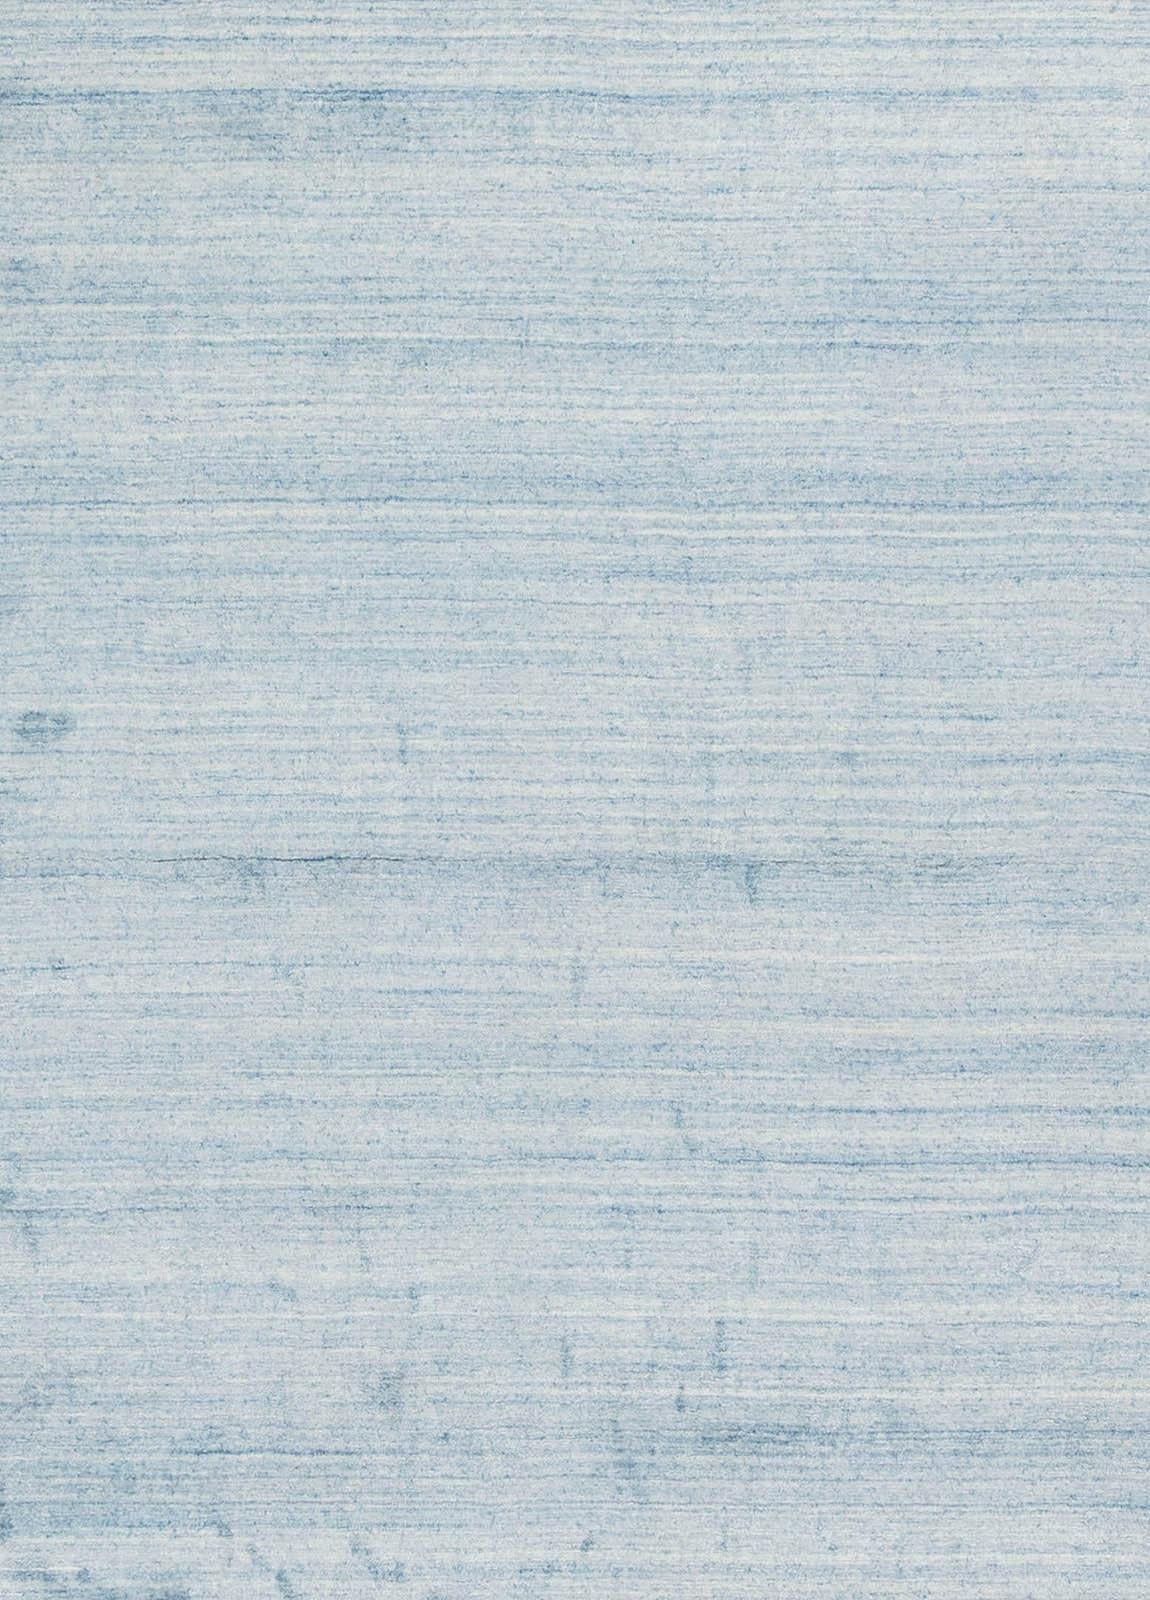 Contemporary Finesse handmade Viscose rug by Doris Leslie Blau
Size: 14.5